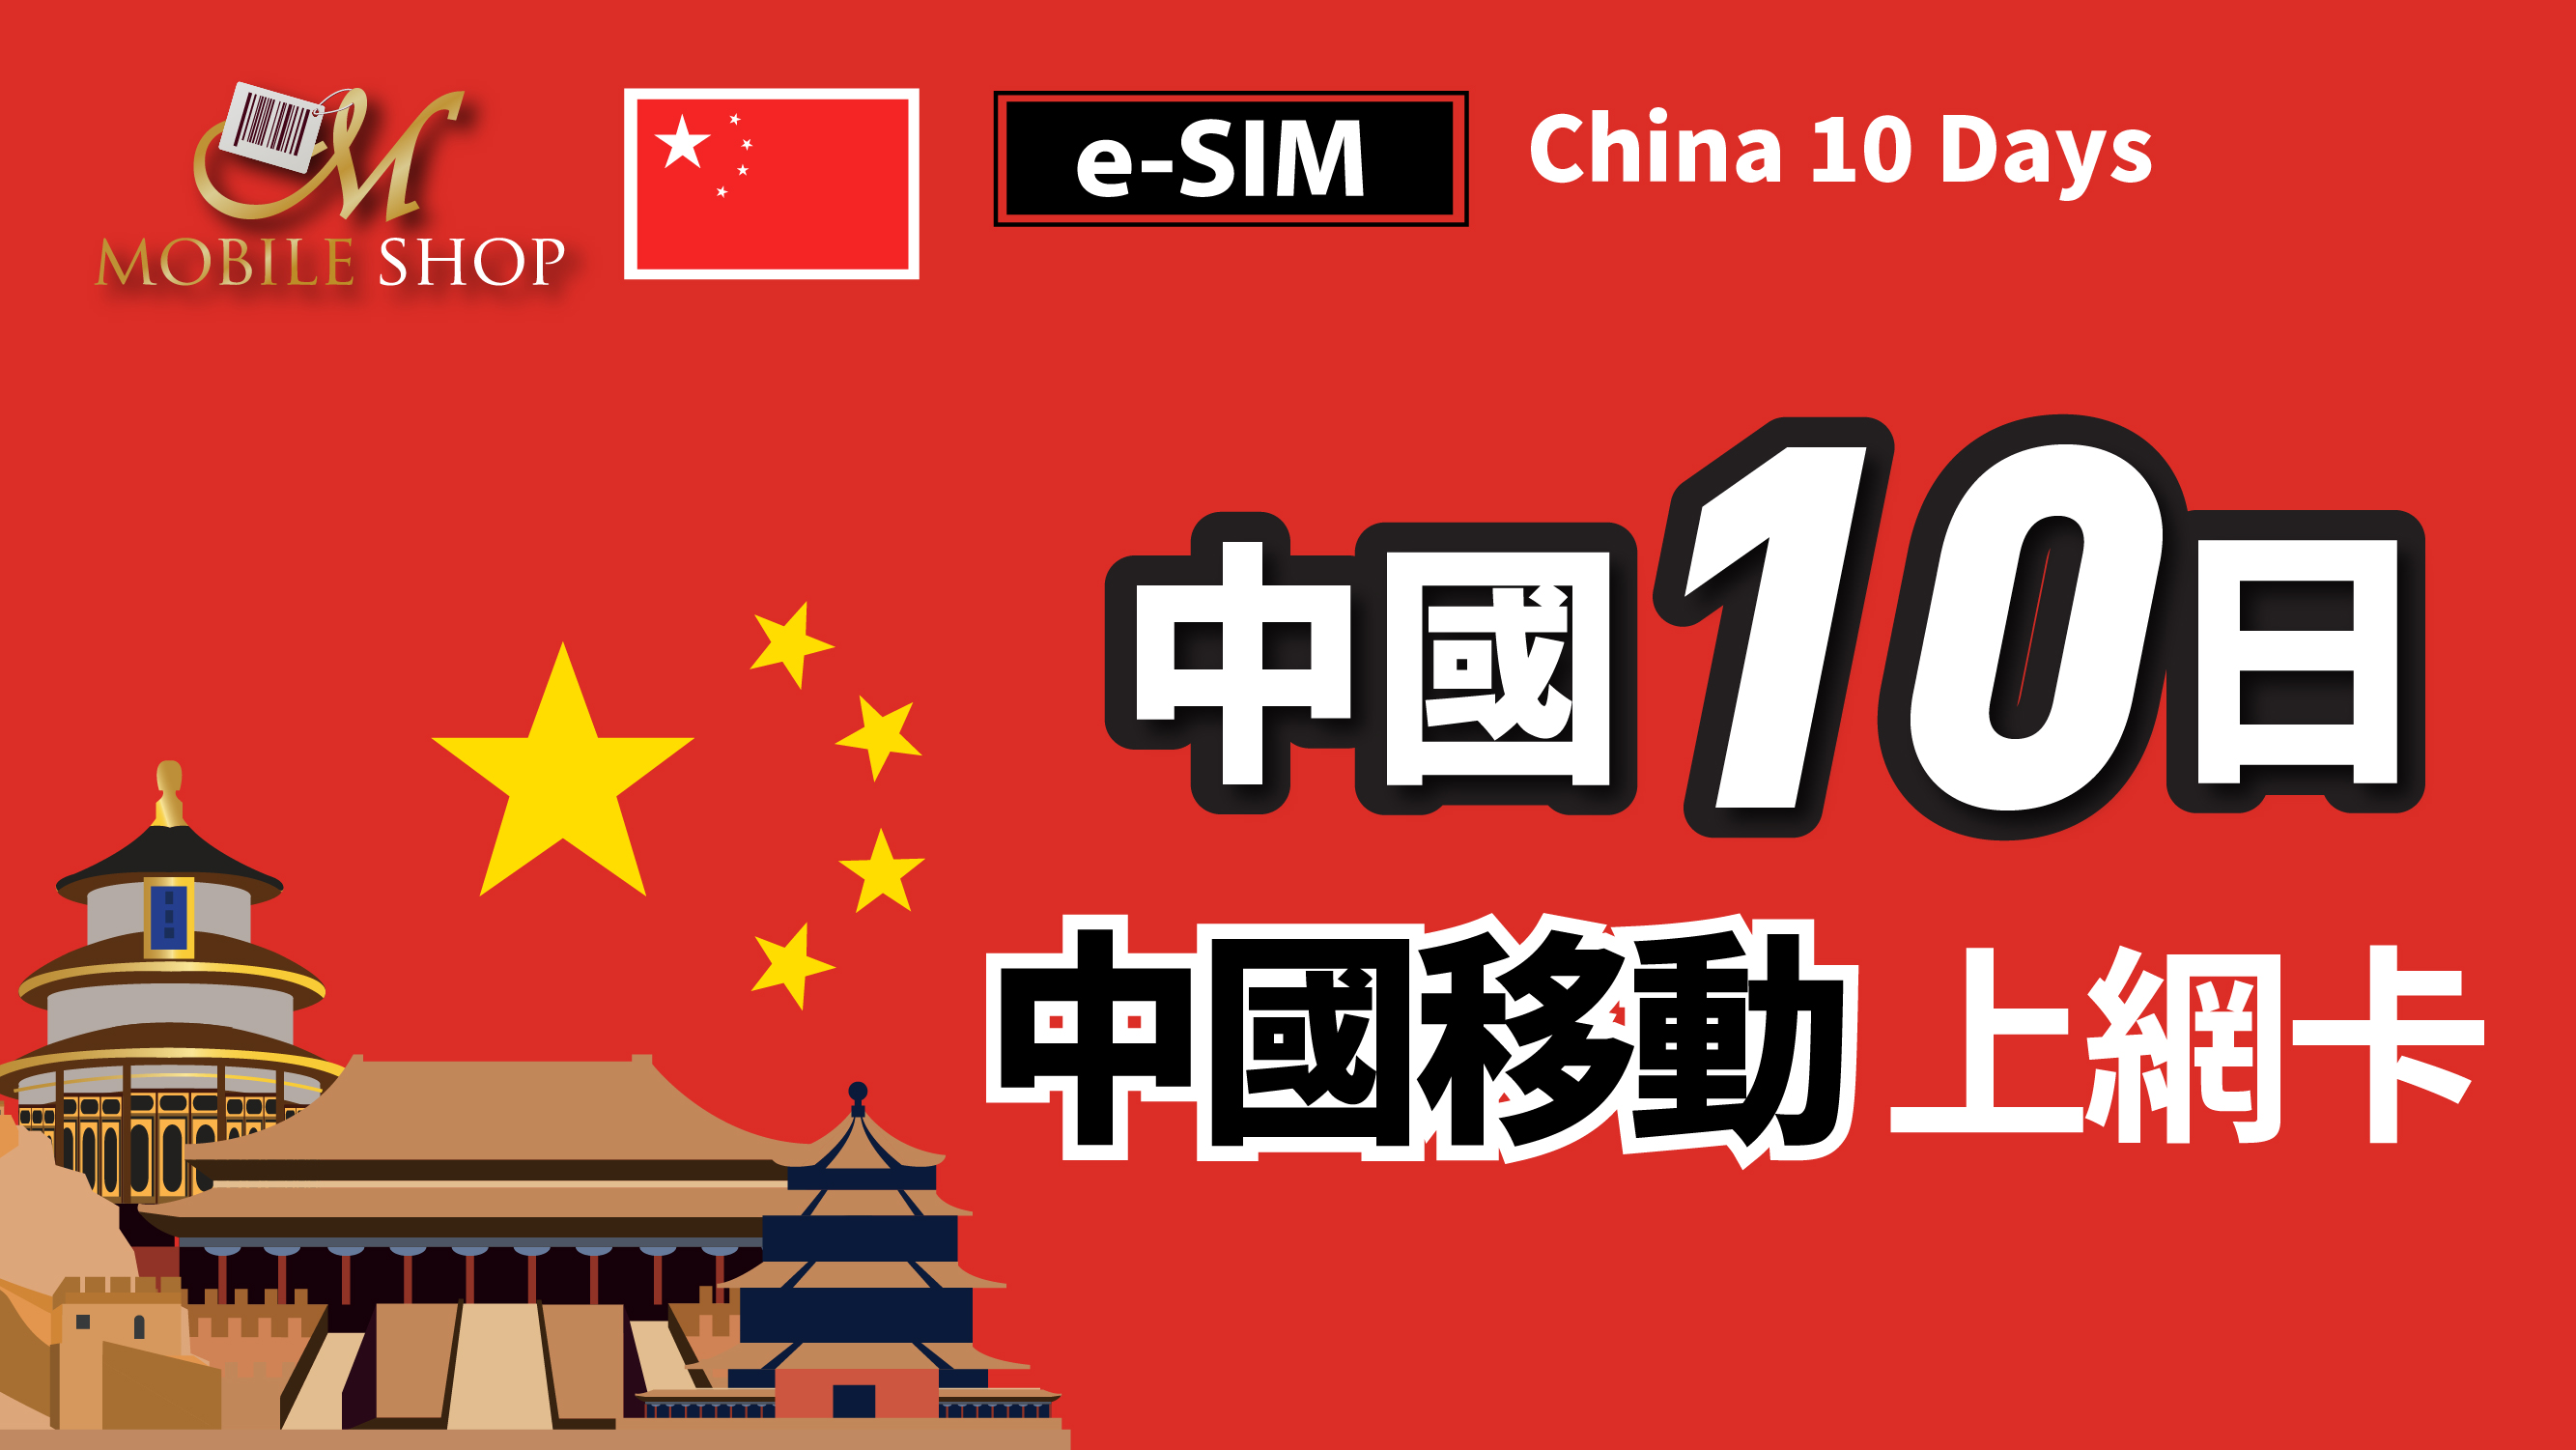 eSIM / China 10days